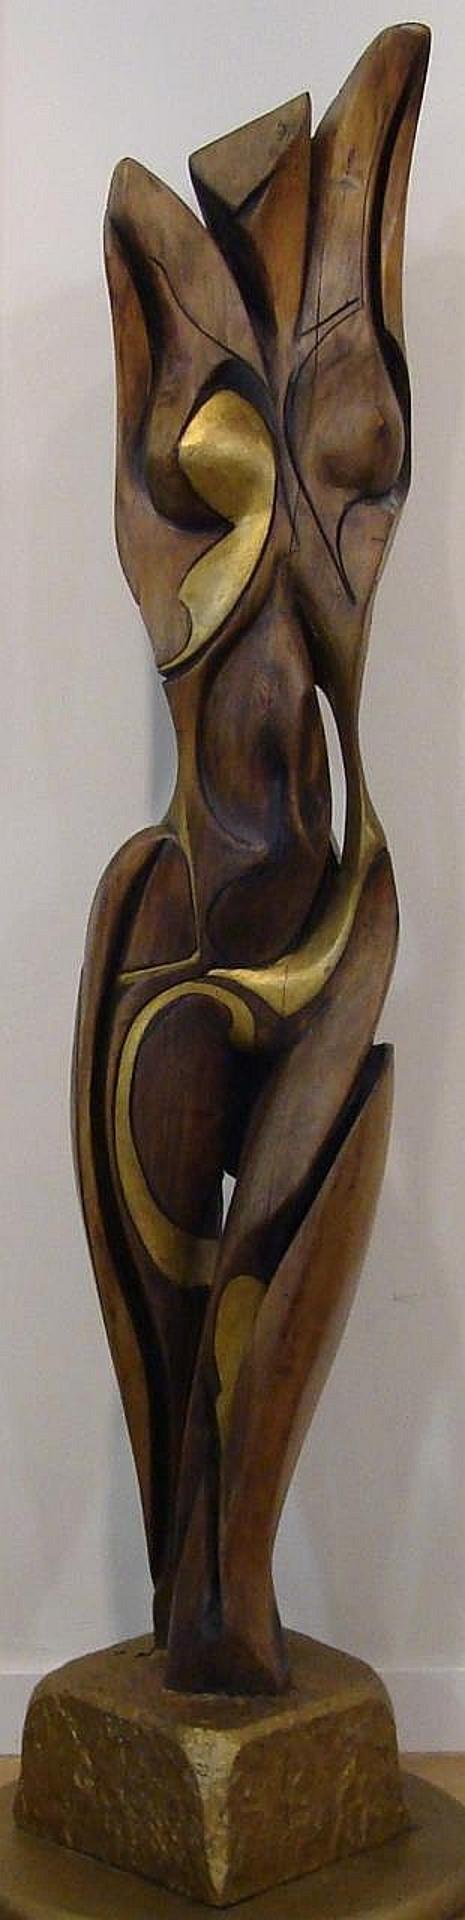 Godfrey Rupert Cripps Stevens (1940) - carved wooden